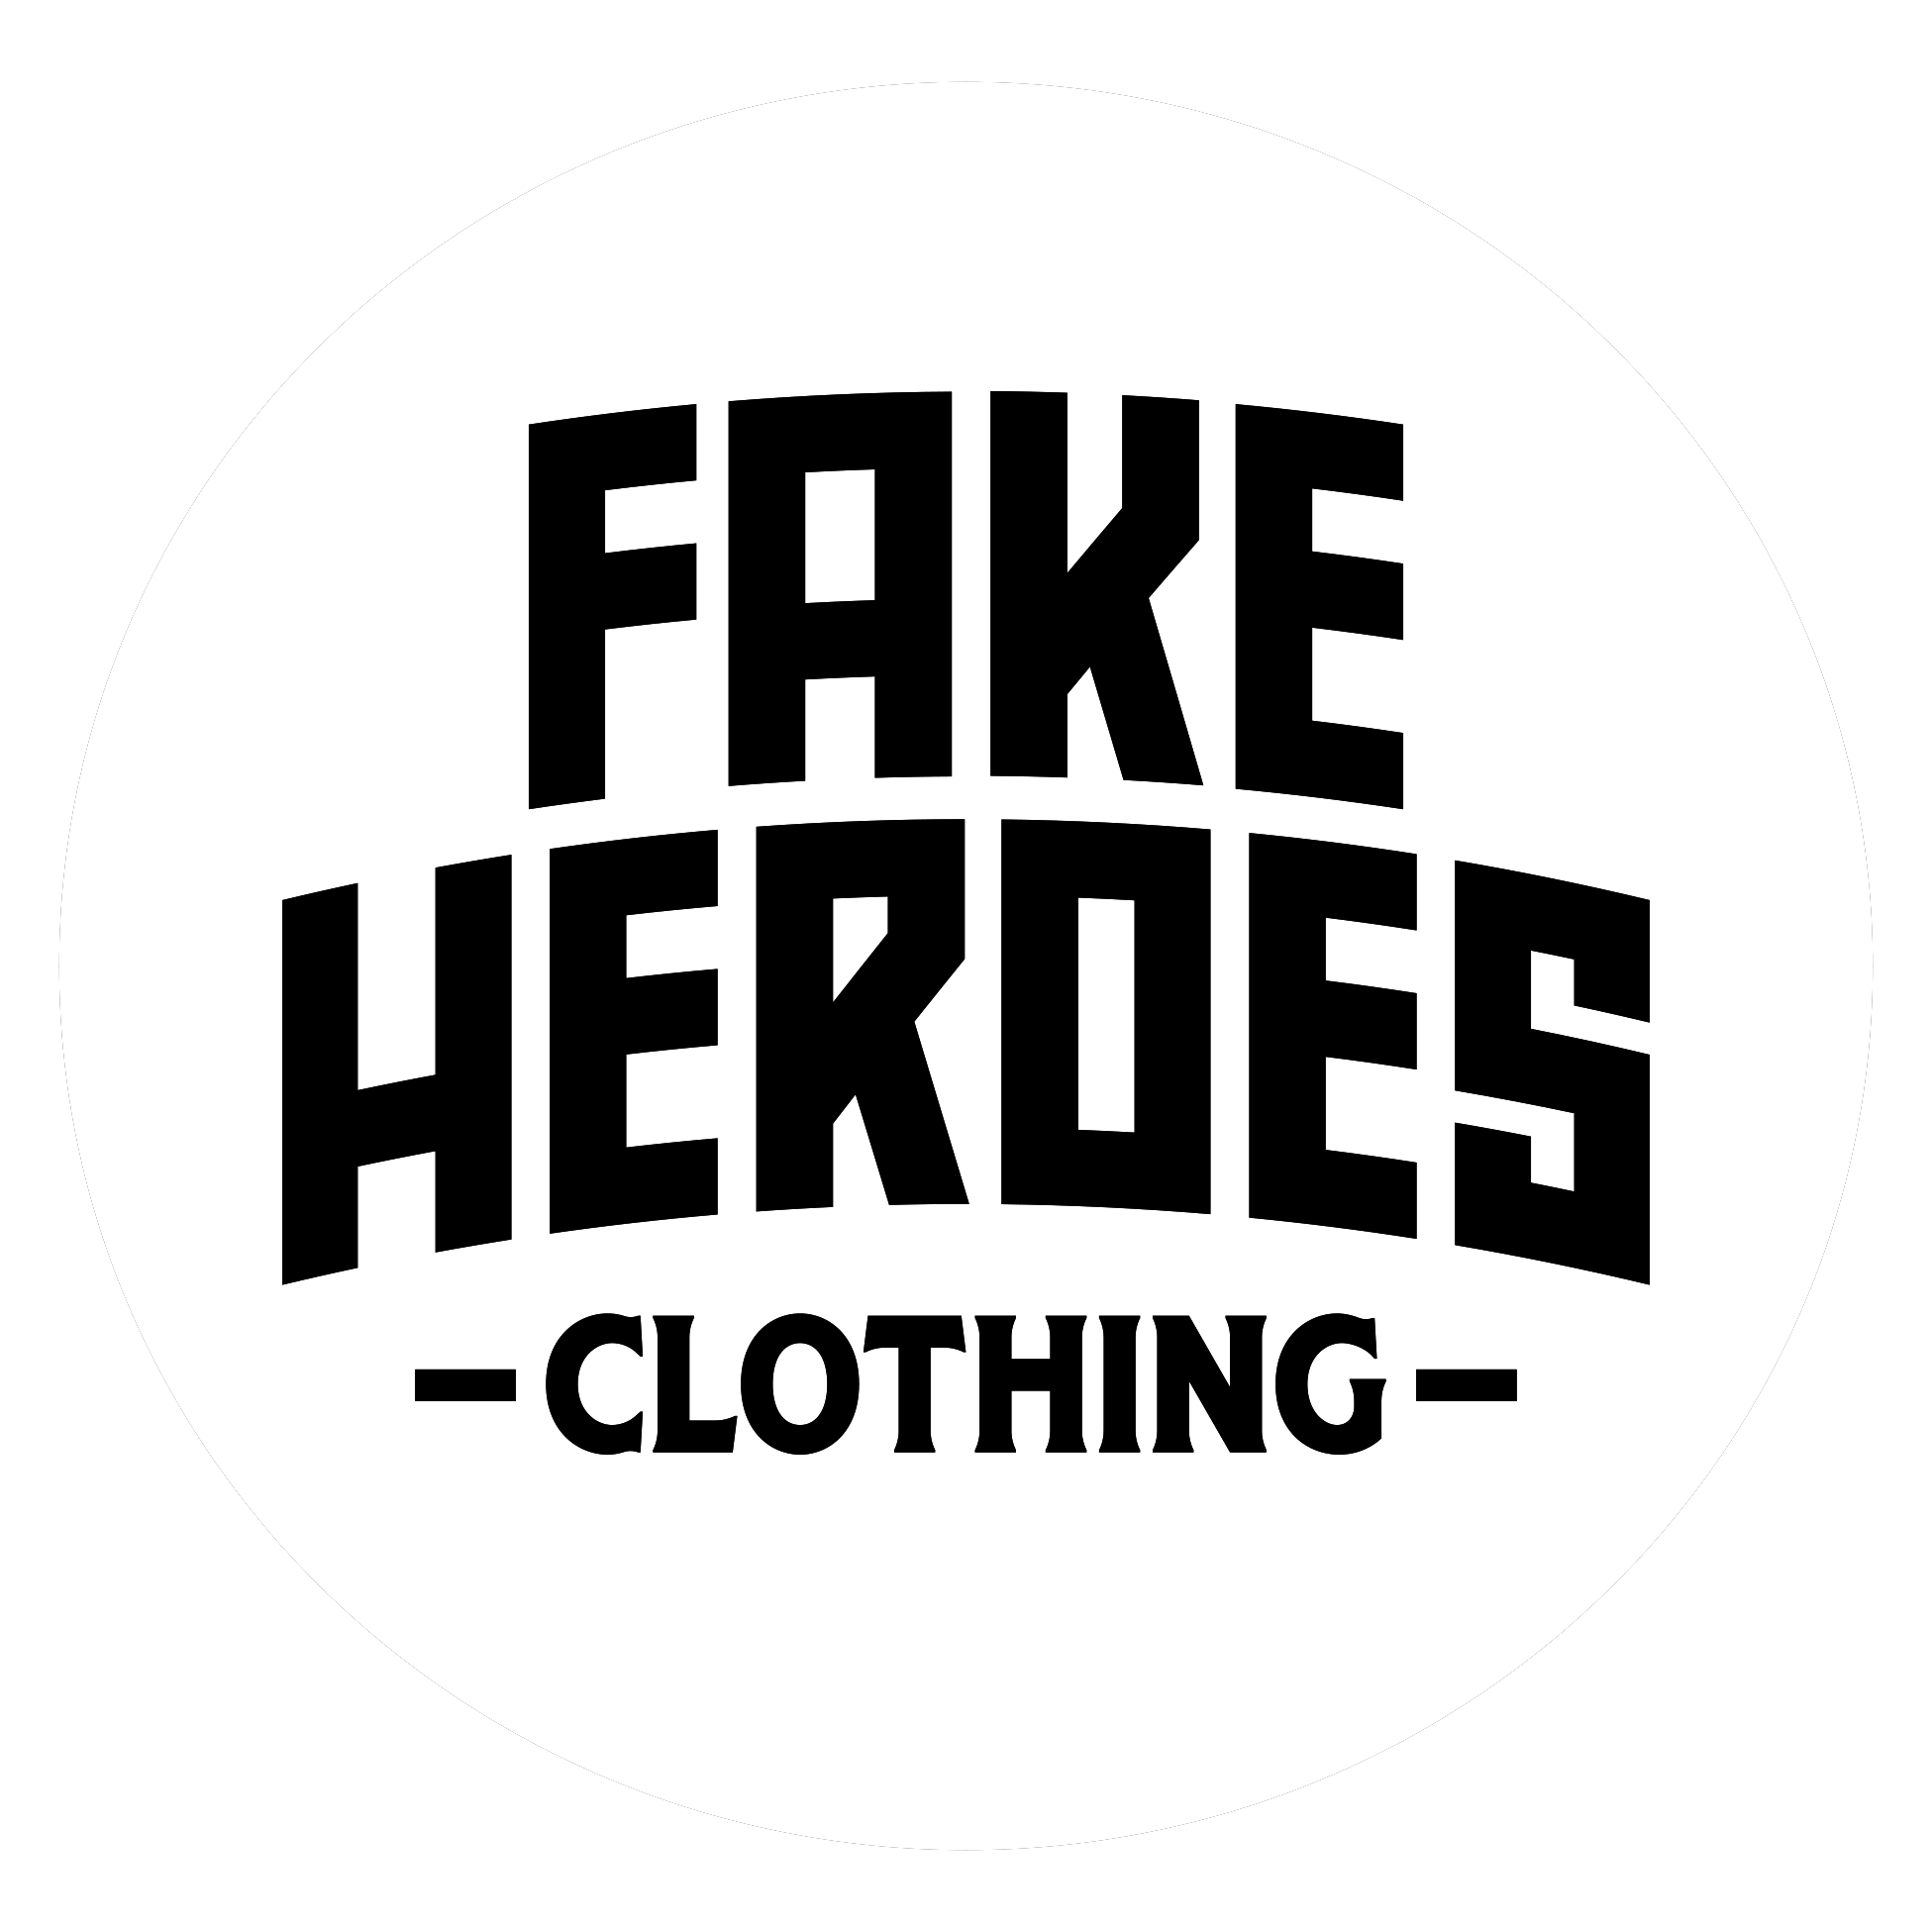 Fake Designer T-Shirts & T-Shirt Designs